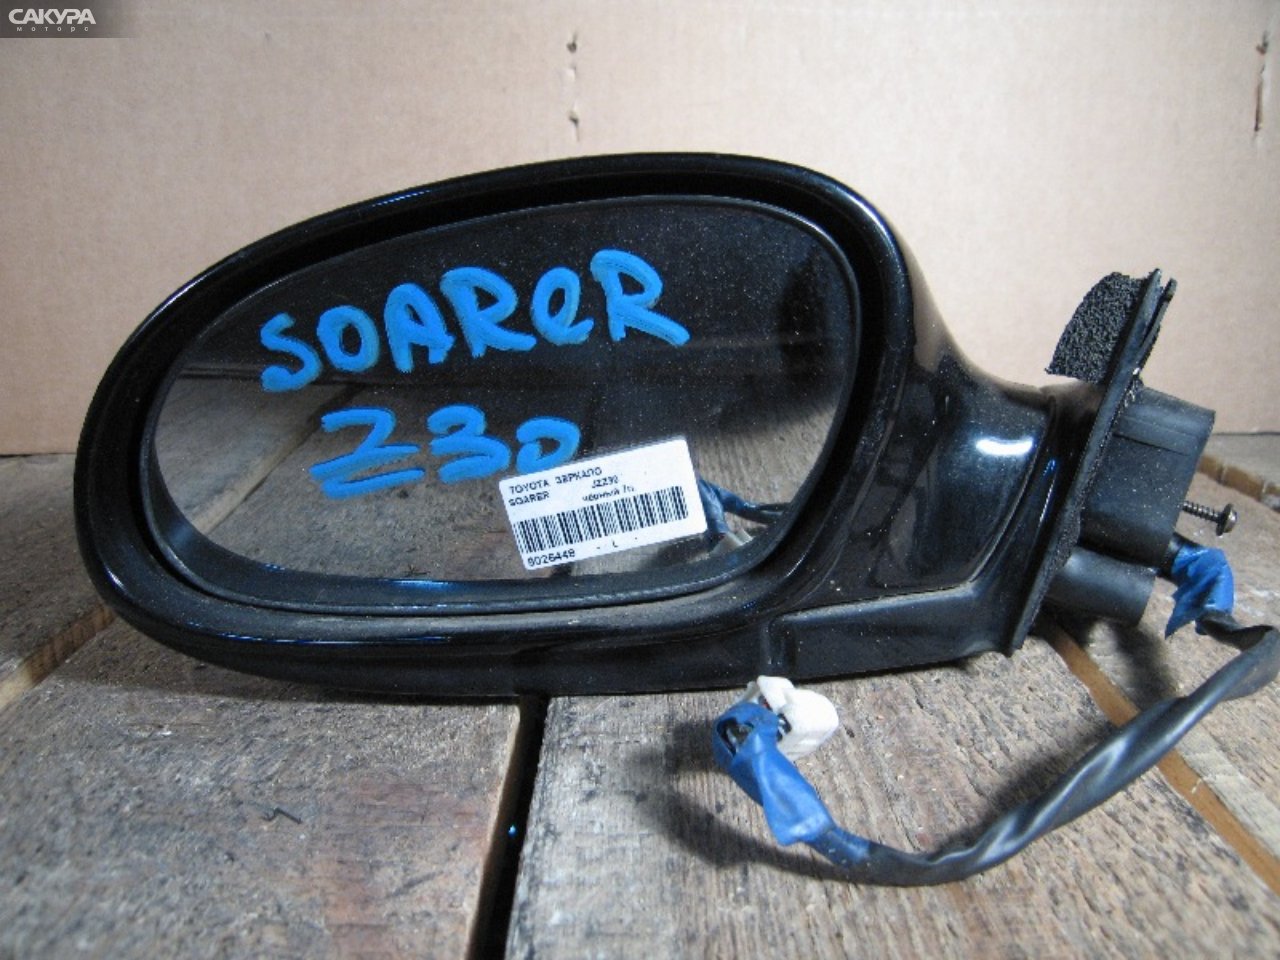 Зеркало боковое левое Toyota Soarer JZZ30: купить в Сакура Абакан.